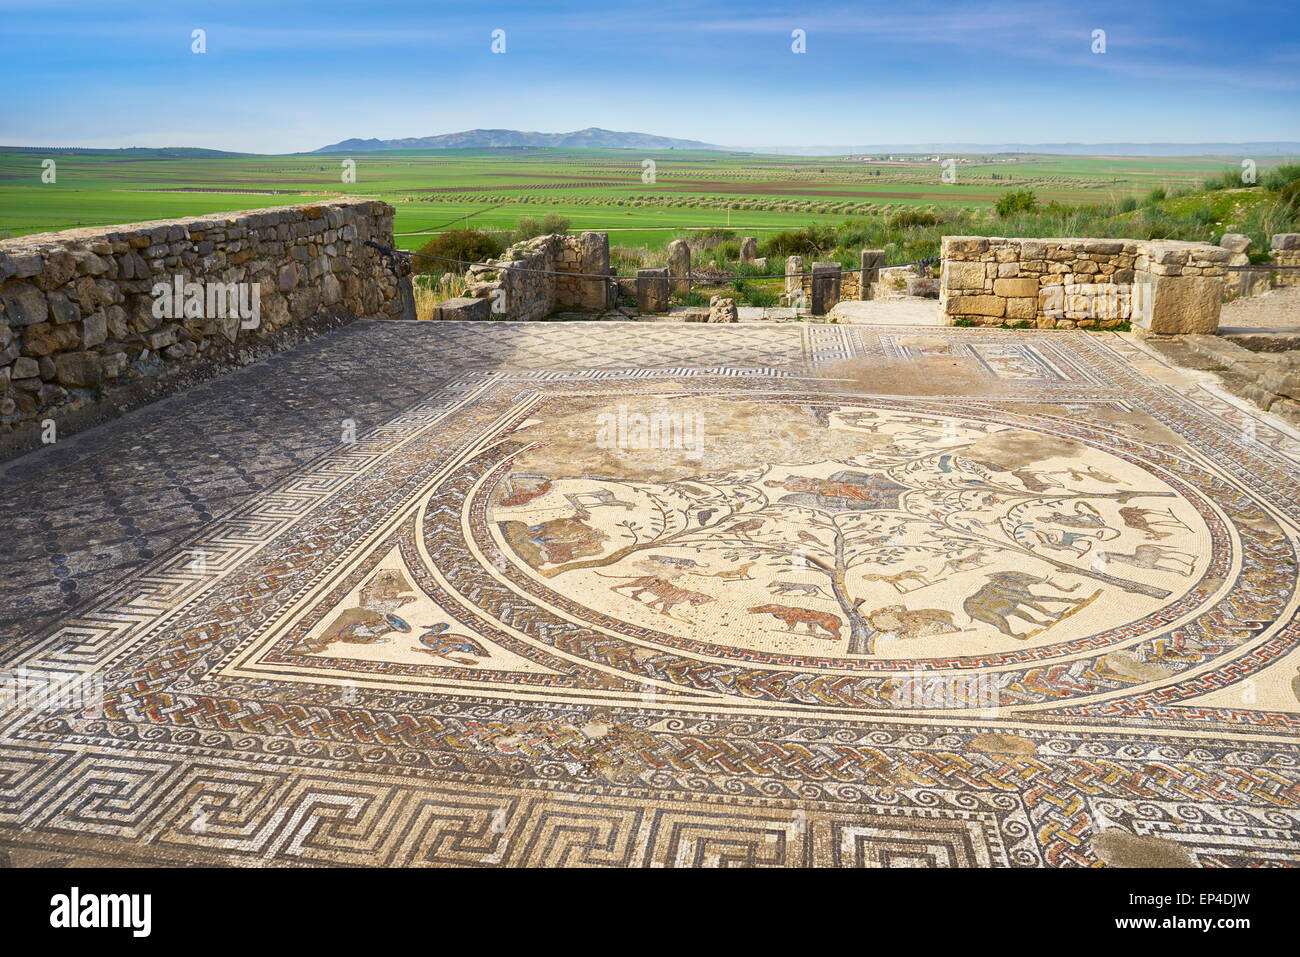 Volubilis, ancienne ville romaine dans la région de Zerhoun montagnes, près de Fès. Vue de la mosaïque dans Orpfeus chambre. Maroc Banque D'Images